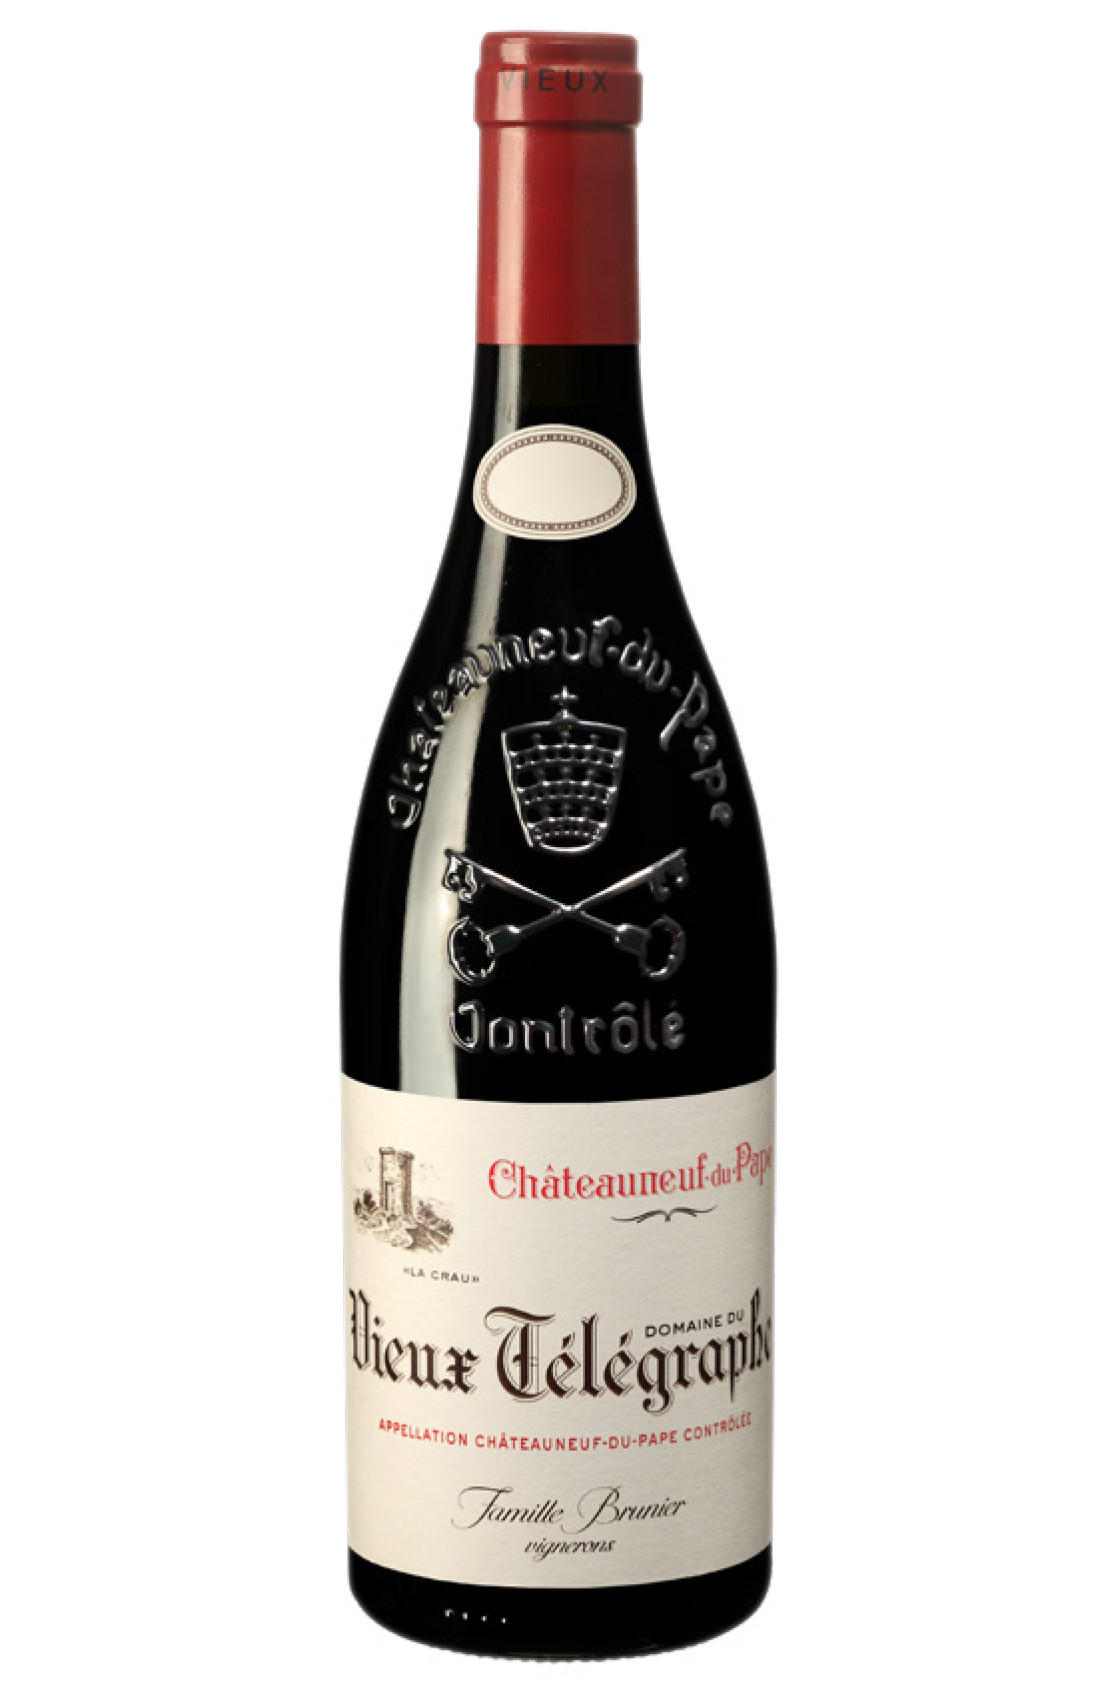 Wine du Rhône Télégraphe, Rudd 2019 Rouge, Berry & Crau, Châteauneuf-du-Pape Vieux Domaine Buy La Bros. -